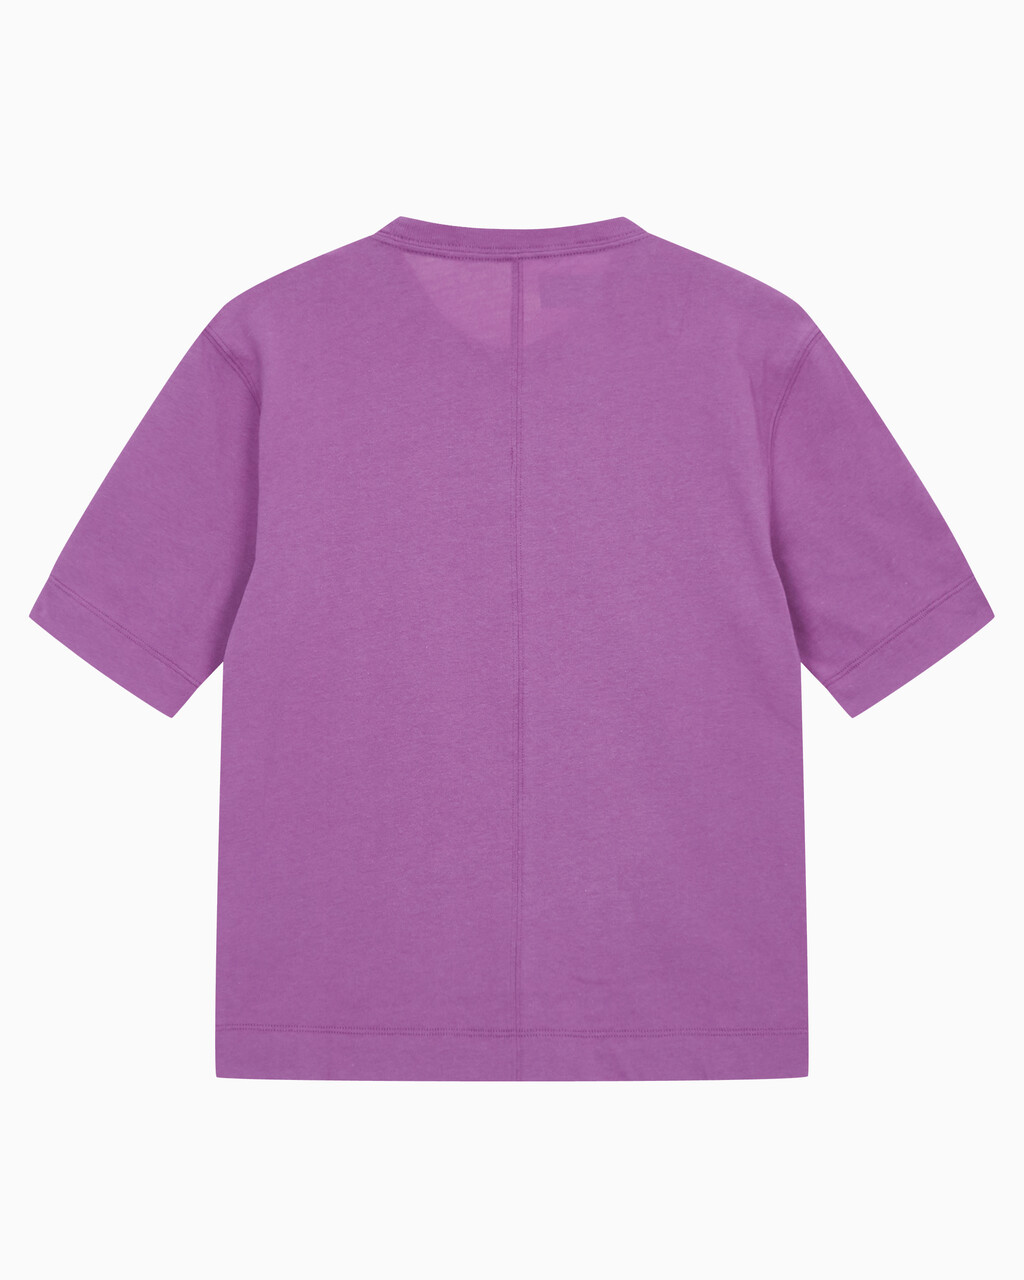 Buy 여성 릴렉스 핏 에센셜 반팔 티셔츠 in color AMETHYST